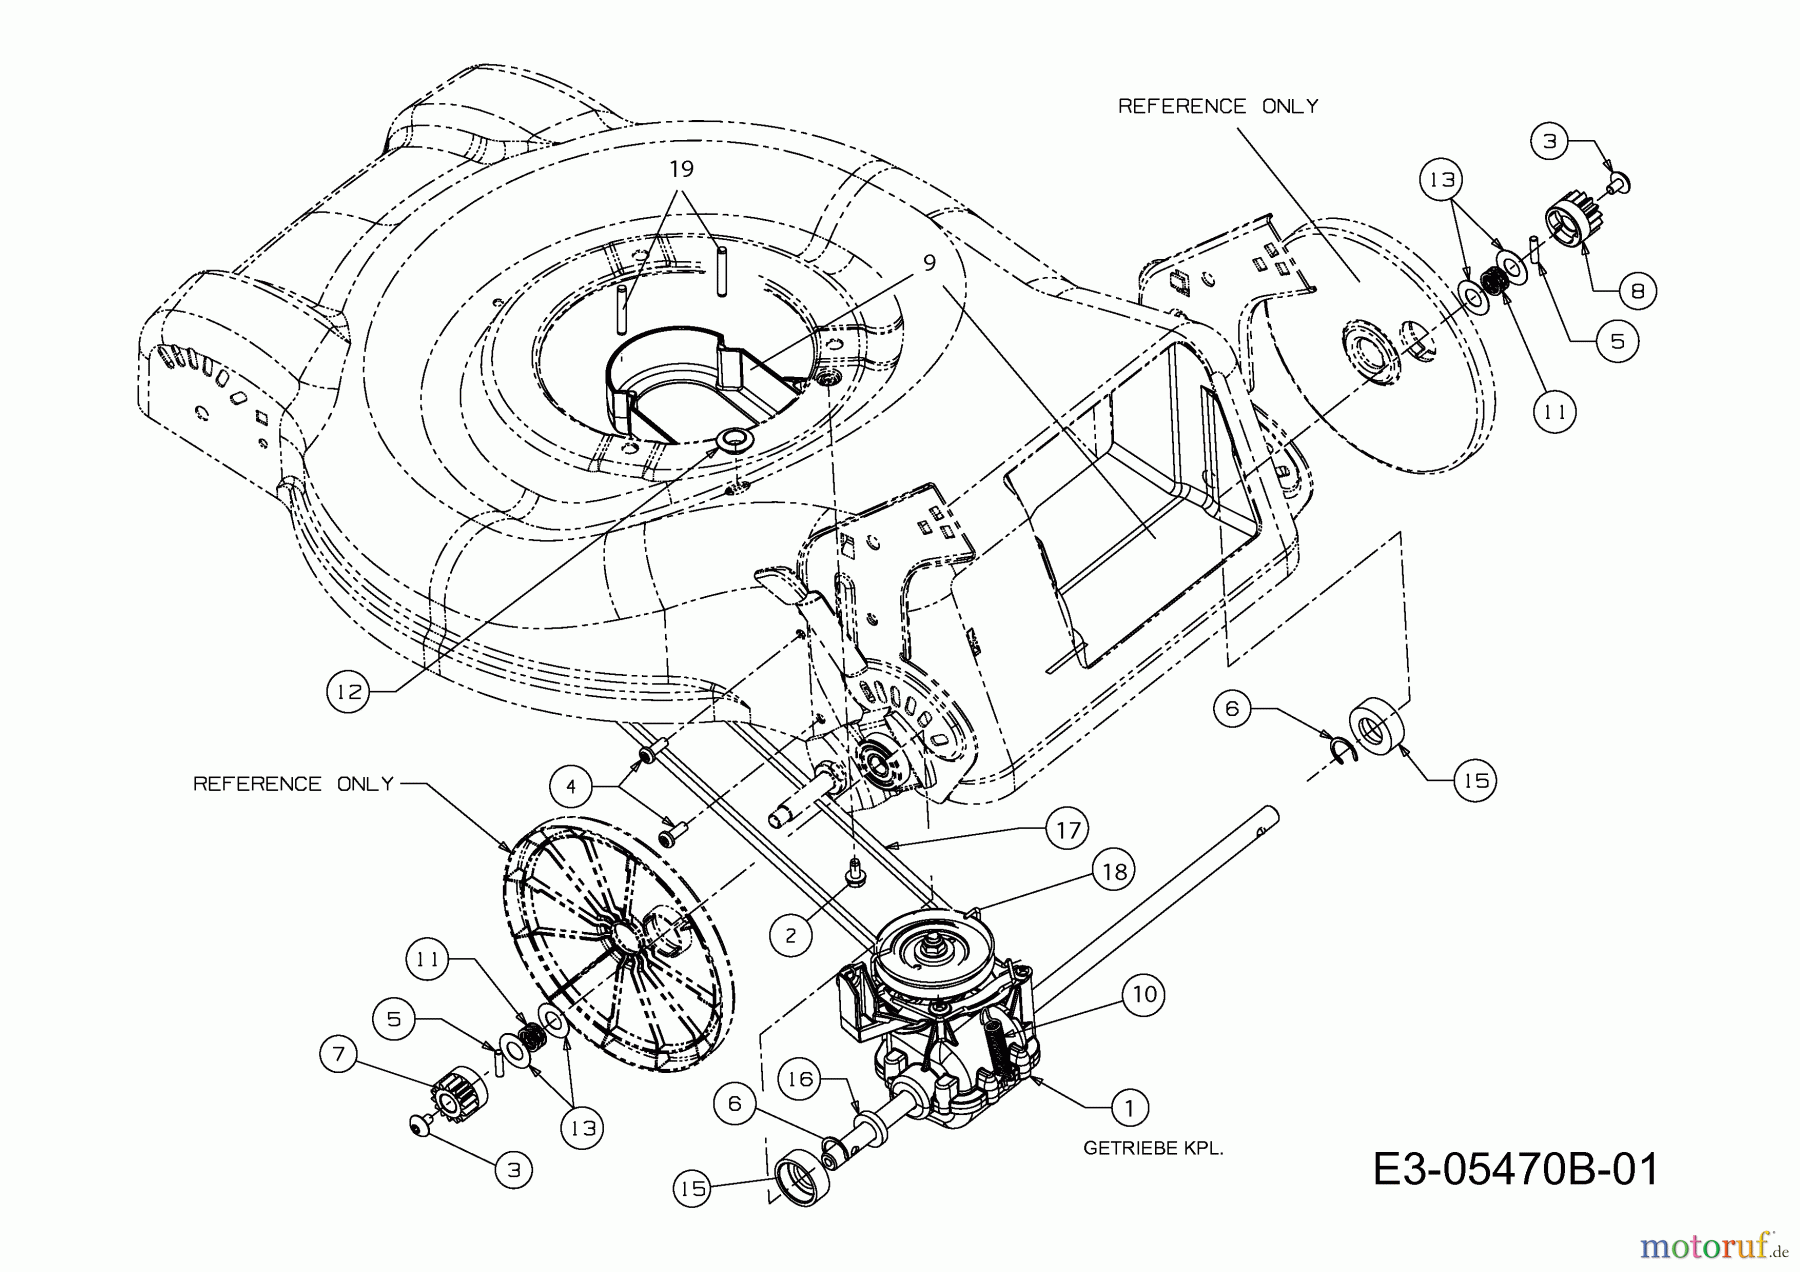  Preisfuxx Motormäher mit Antrieb PF 46 A 12E-J2JD628  (2012) Getriebe